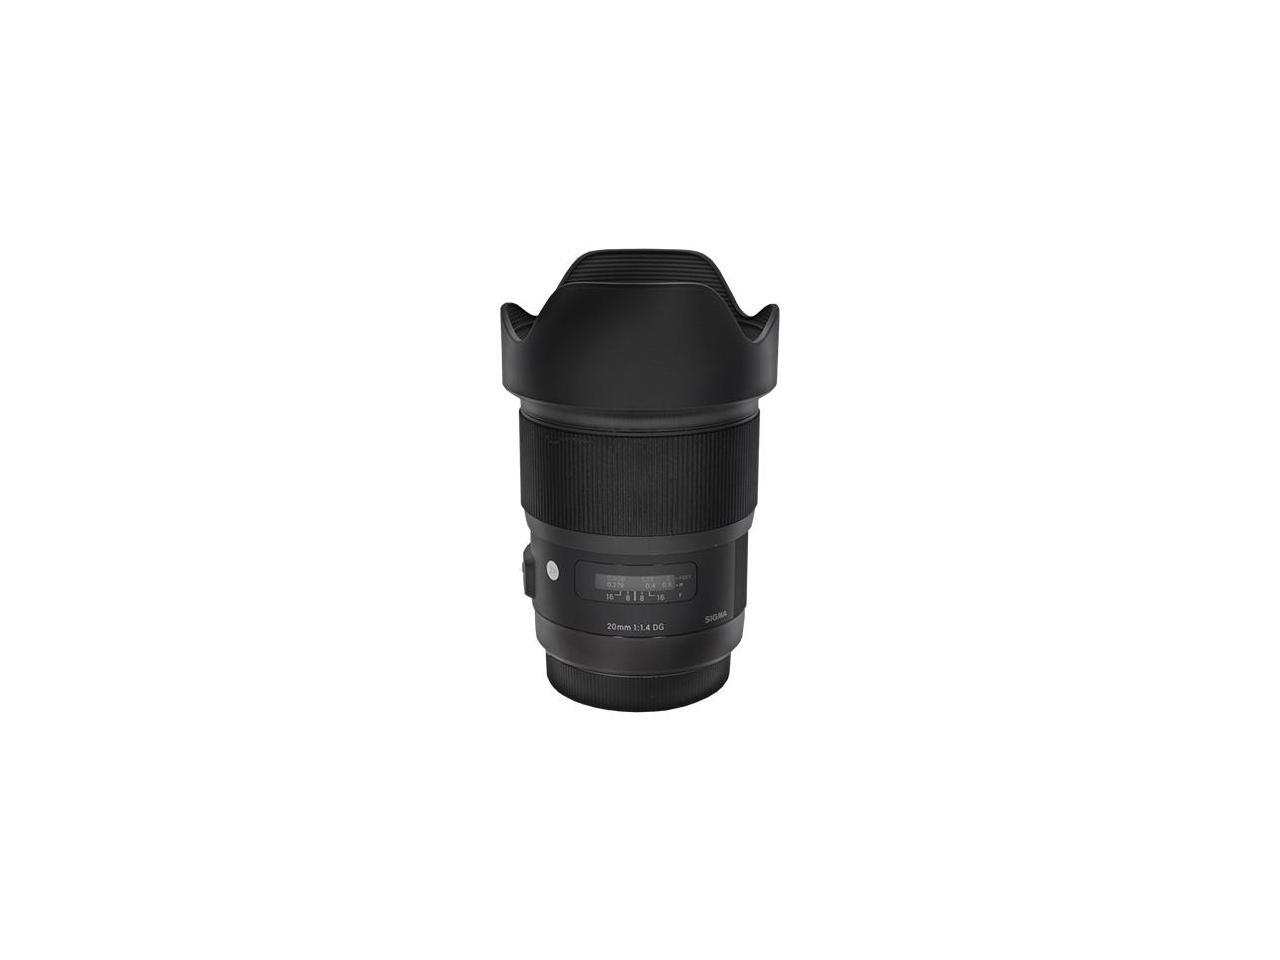 Sigma 20mm f/1.4 DG HSM Art Lens for Sony E Mount